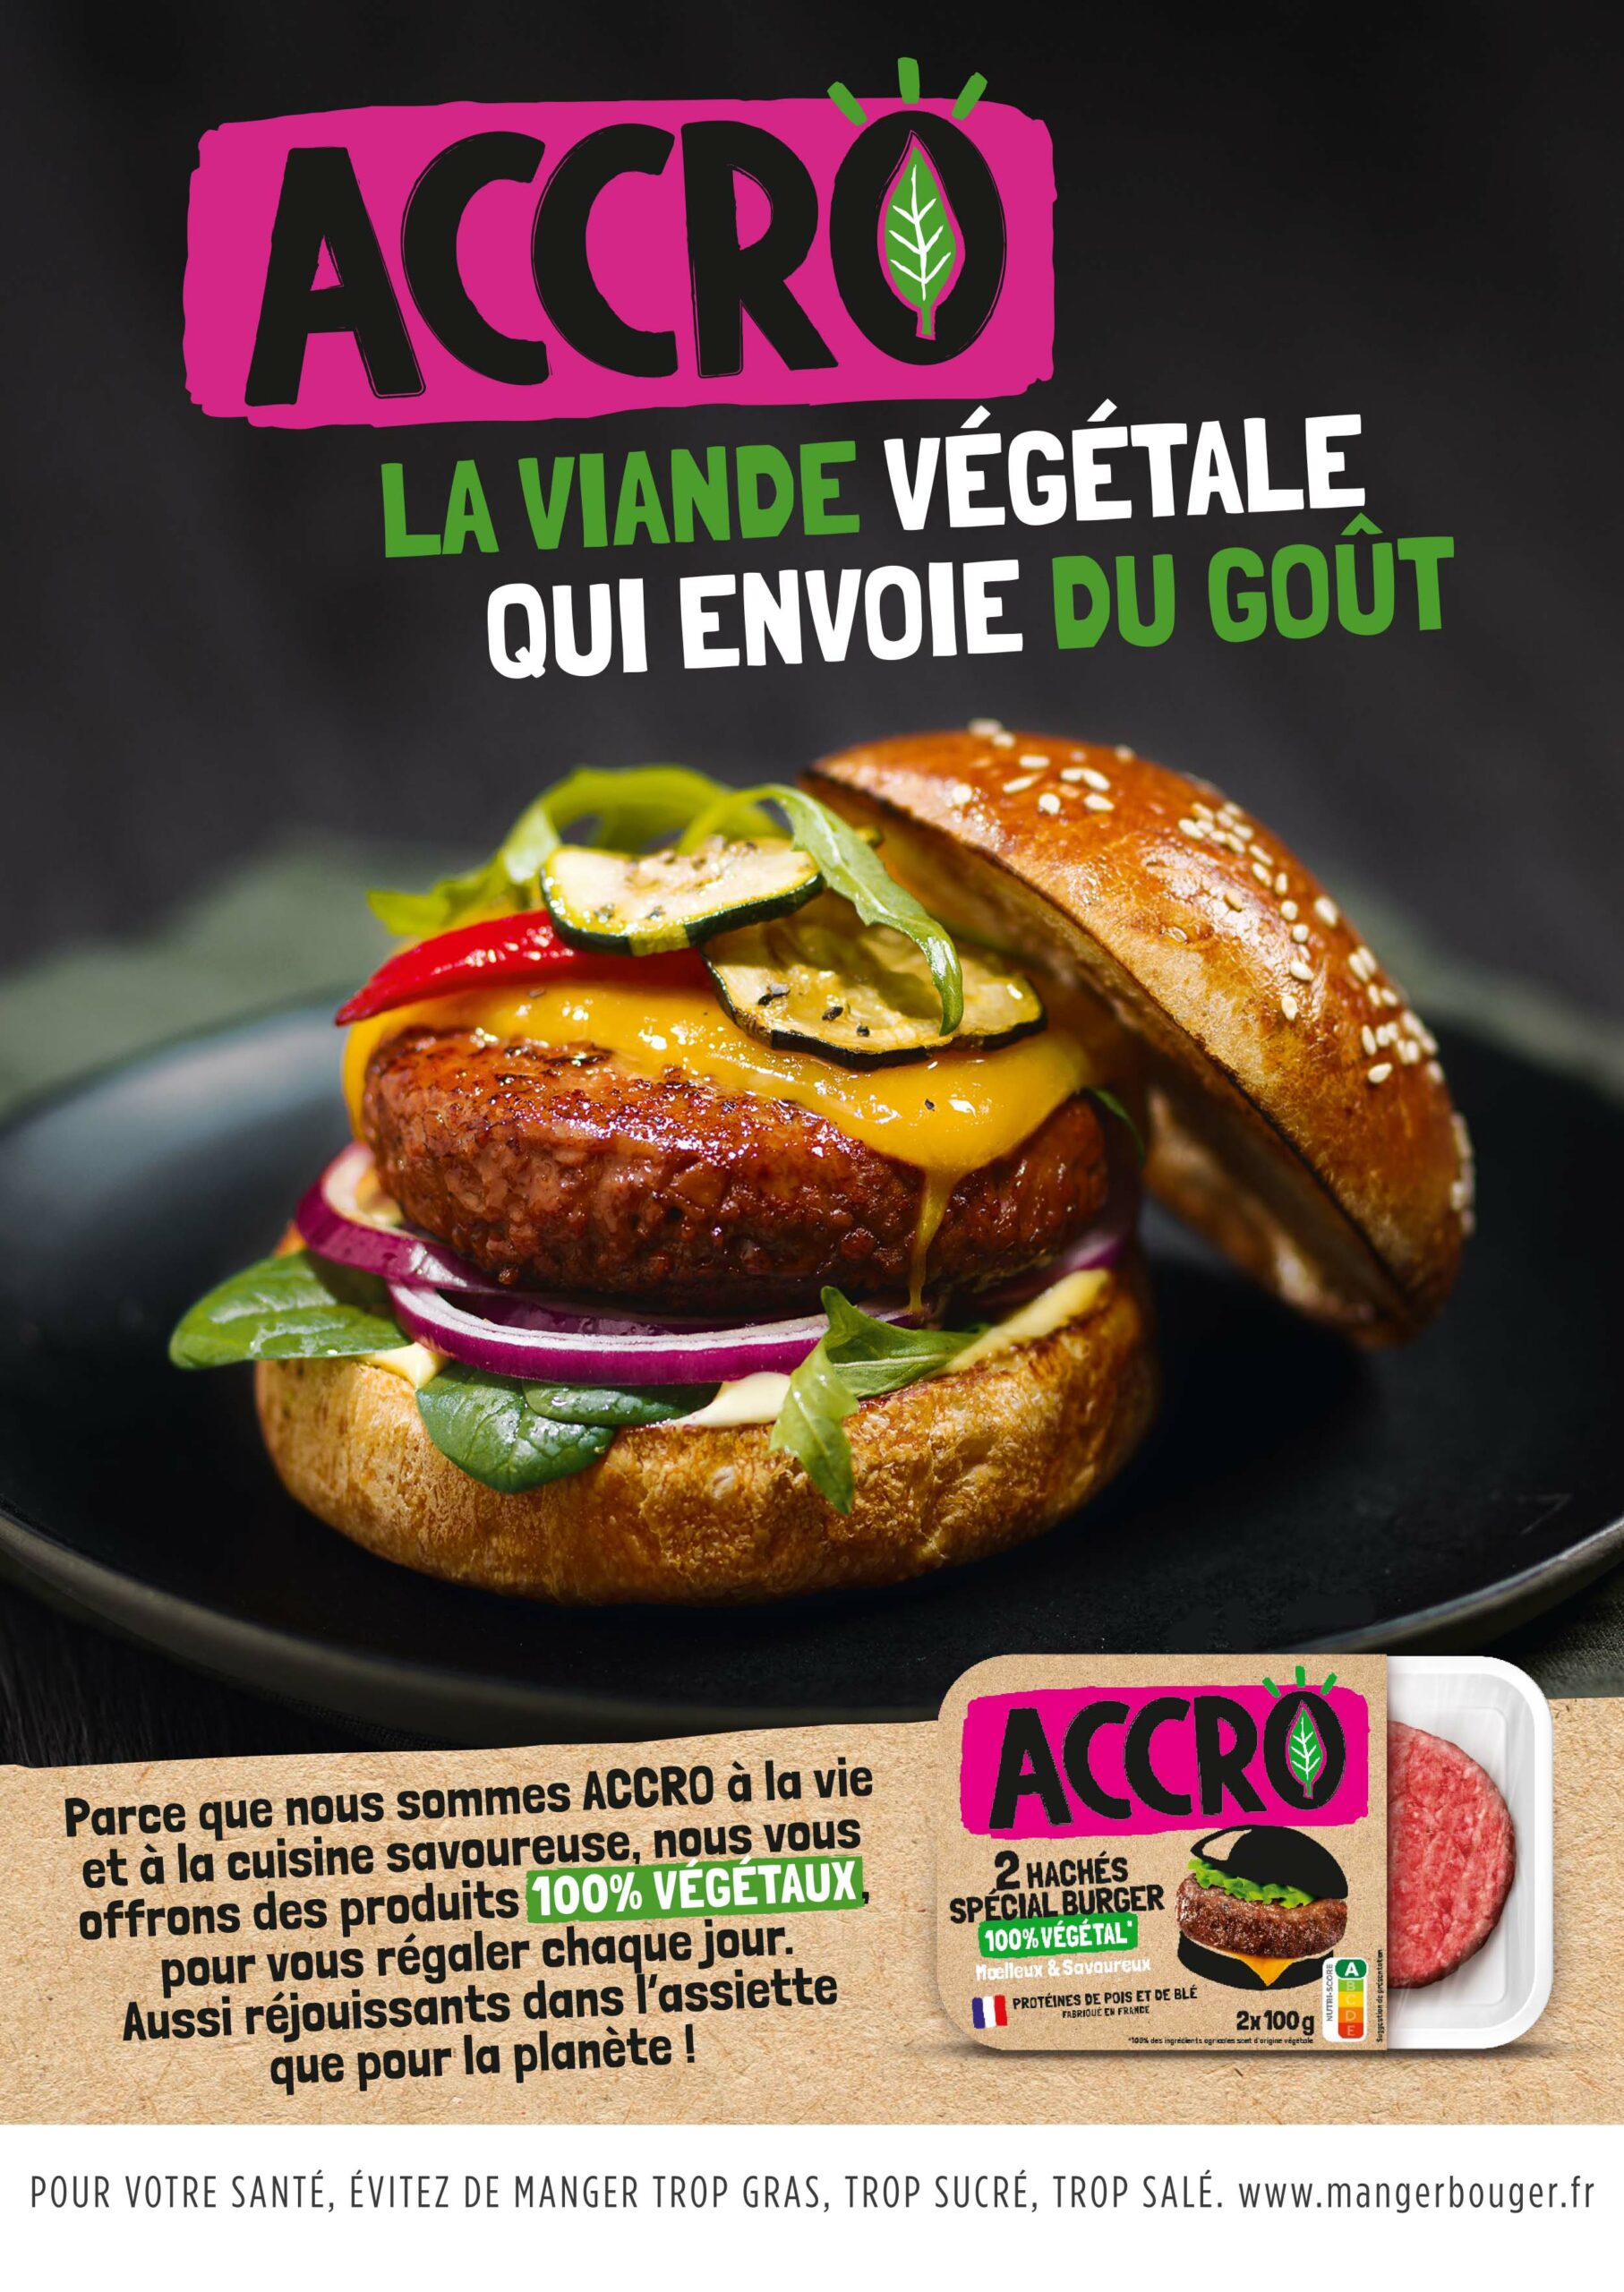 Annonce-presse pour la marque Accro montrant un burger végétal